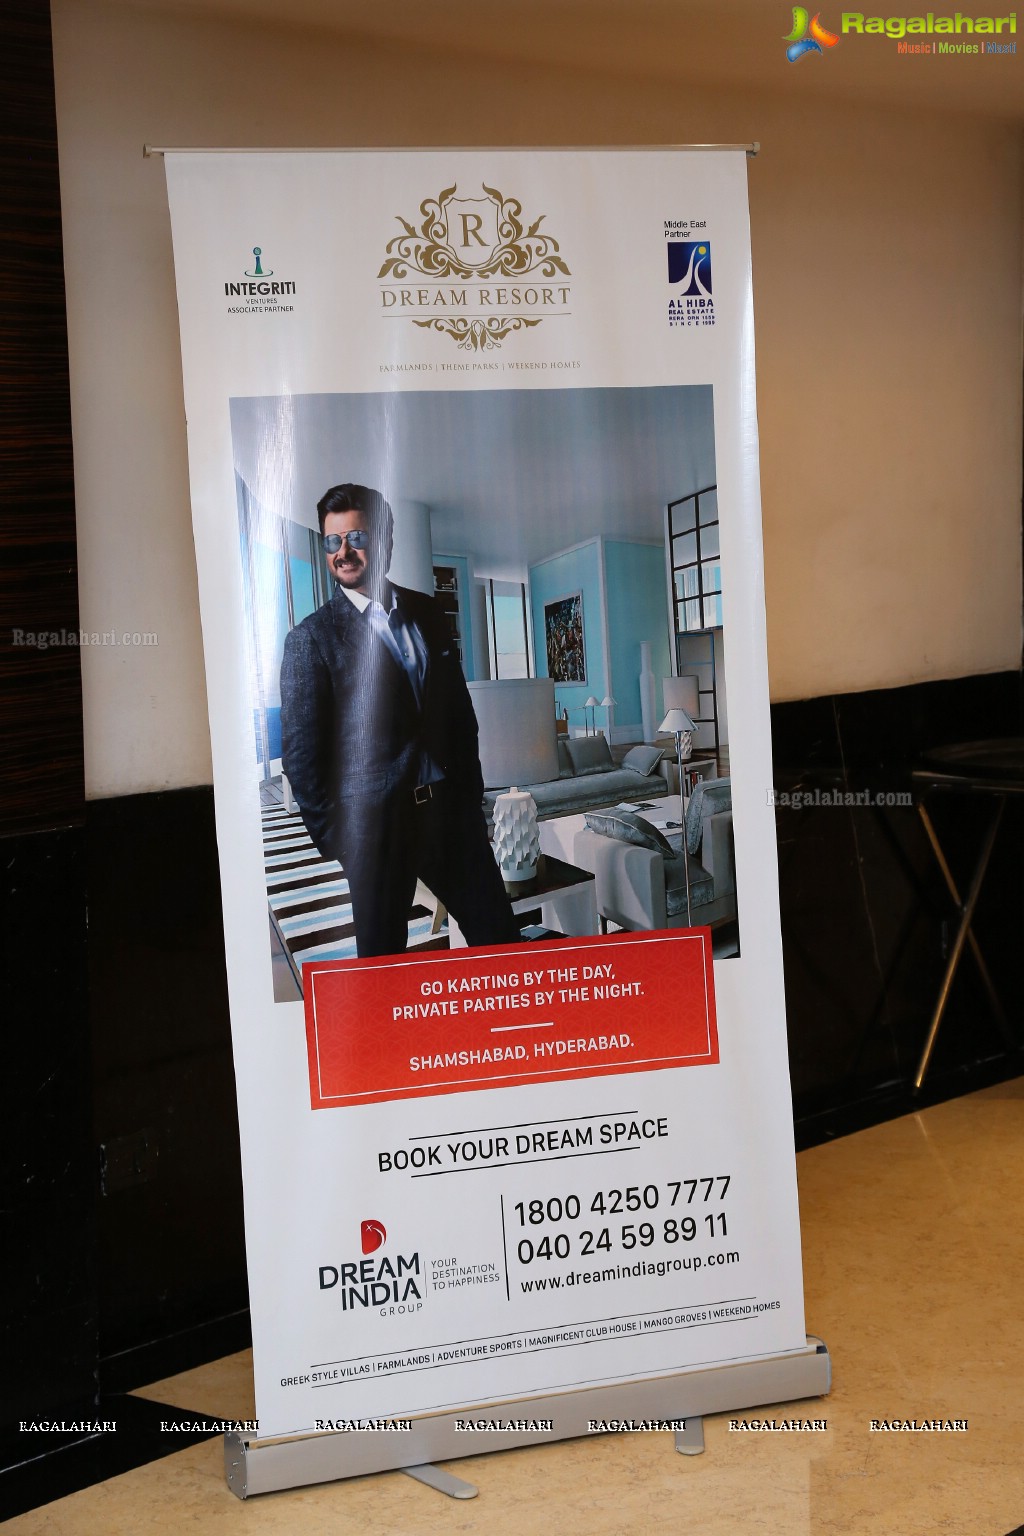 Dream India Group's 500 Crore Project Dream Resort Announcement at Taj Deccan, Hyderabad